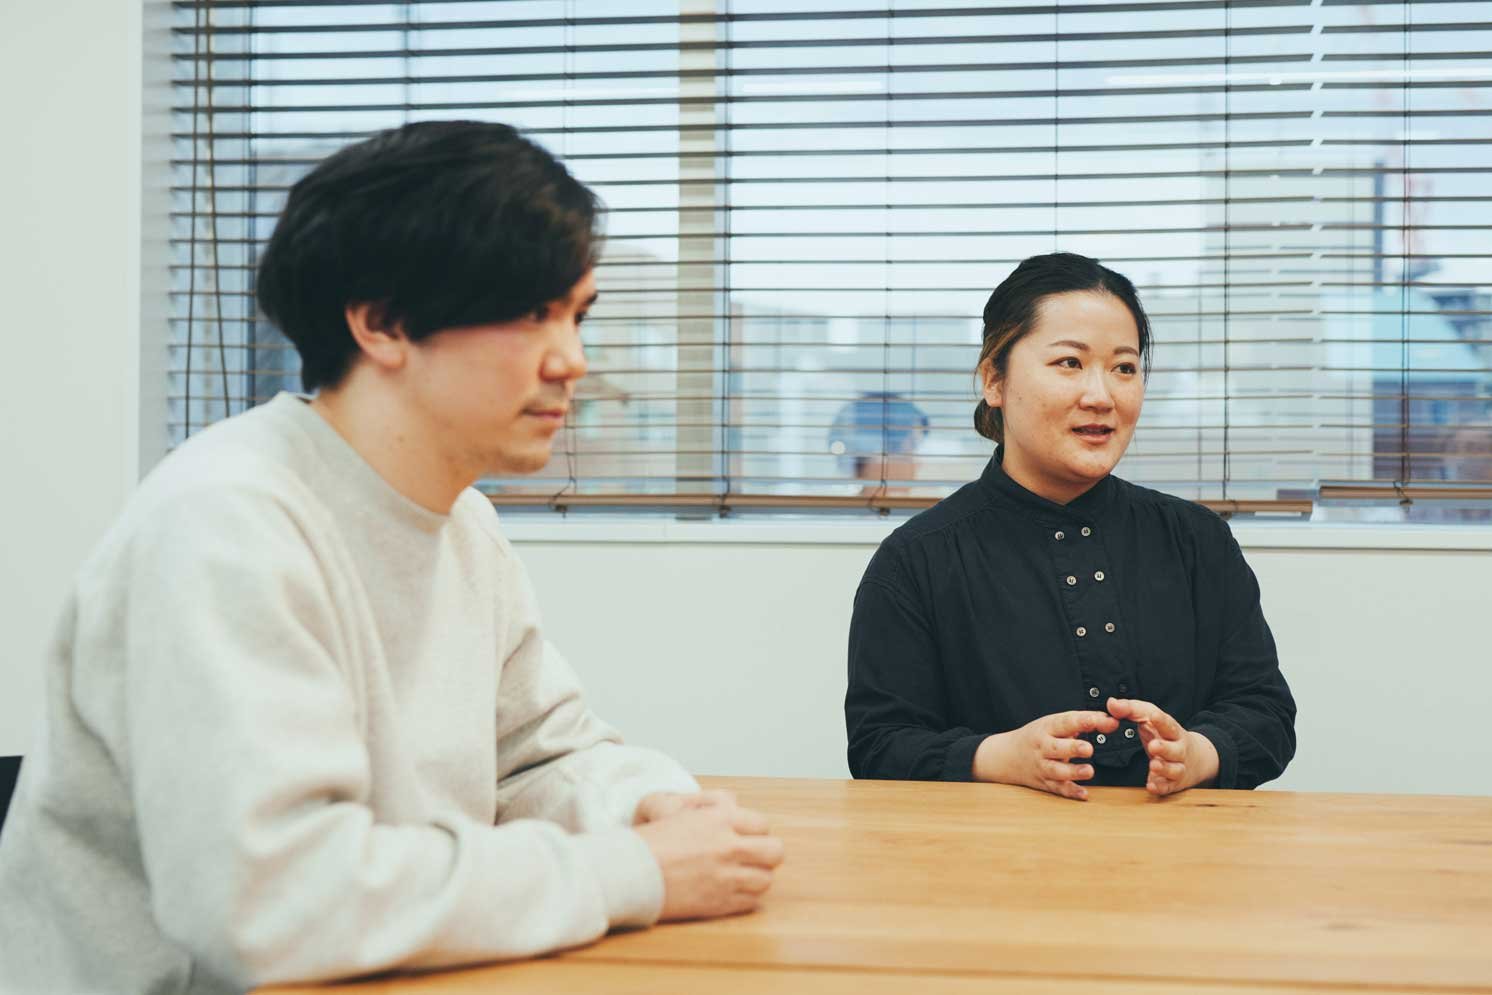 左から小川氏、田中氏 | Make New Magazine「未来の定番」をつくるために、パナソニックのリアルな姿を伝えるメディア